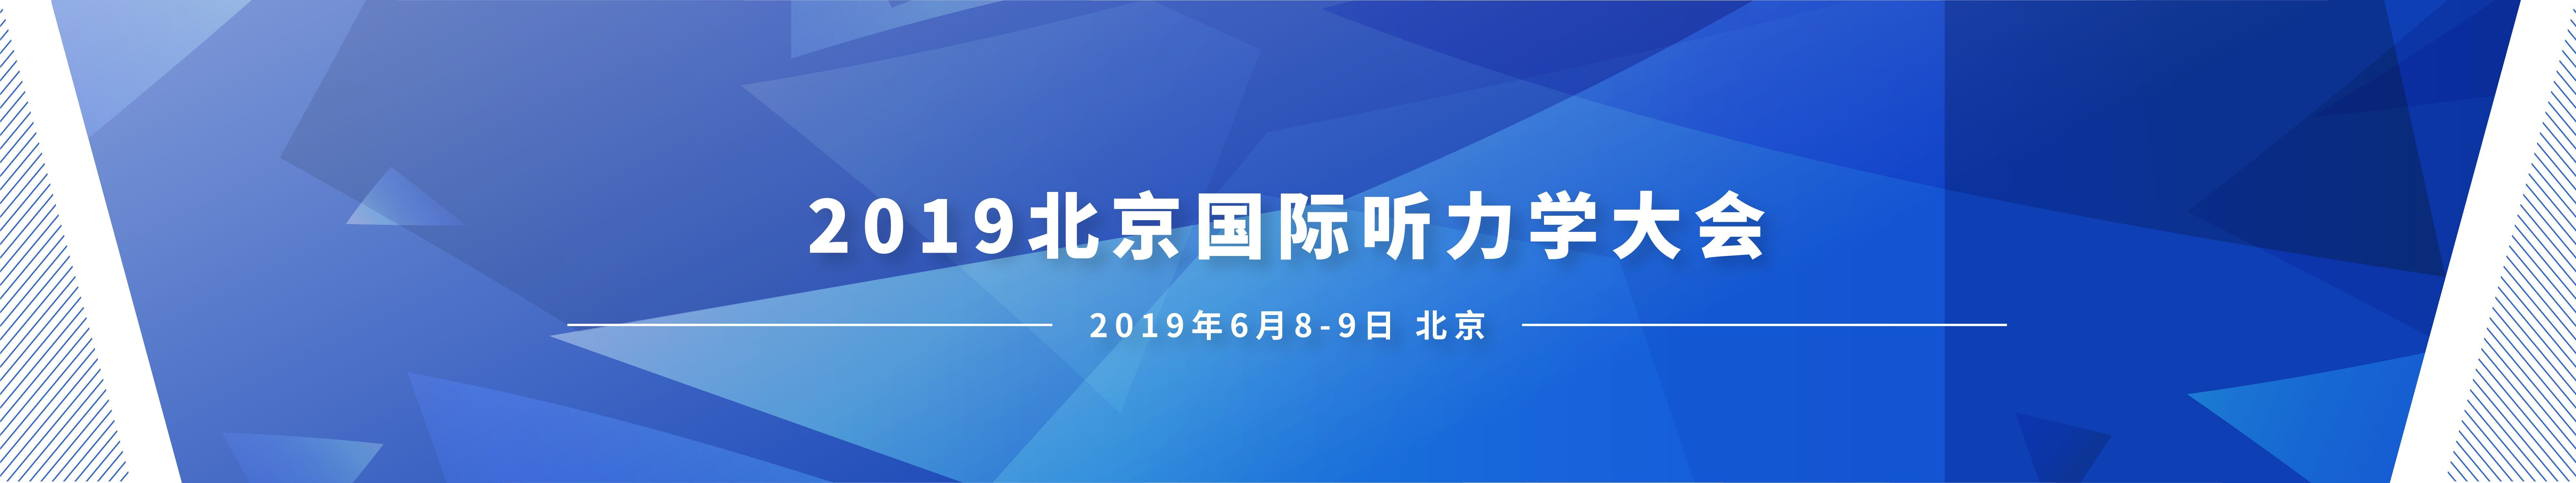 2019北京国际听力学大会